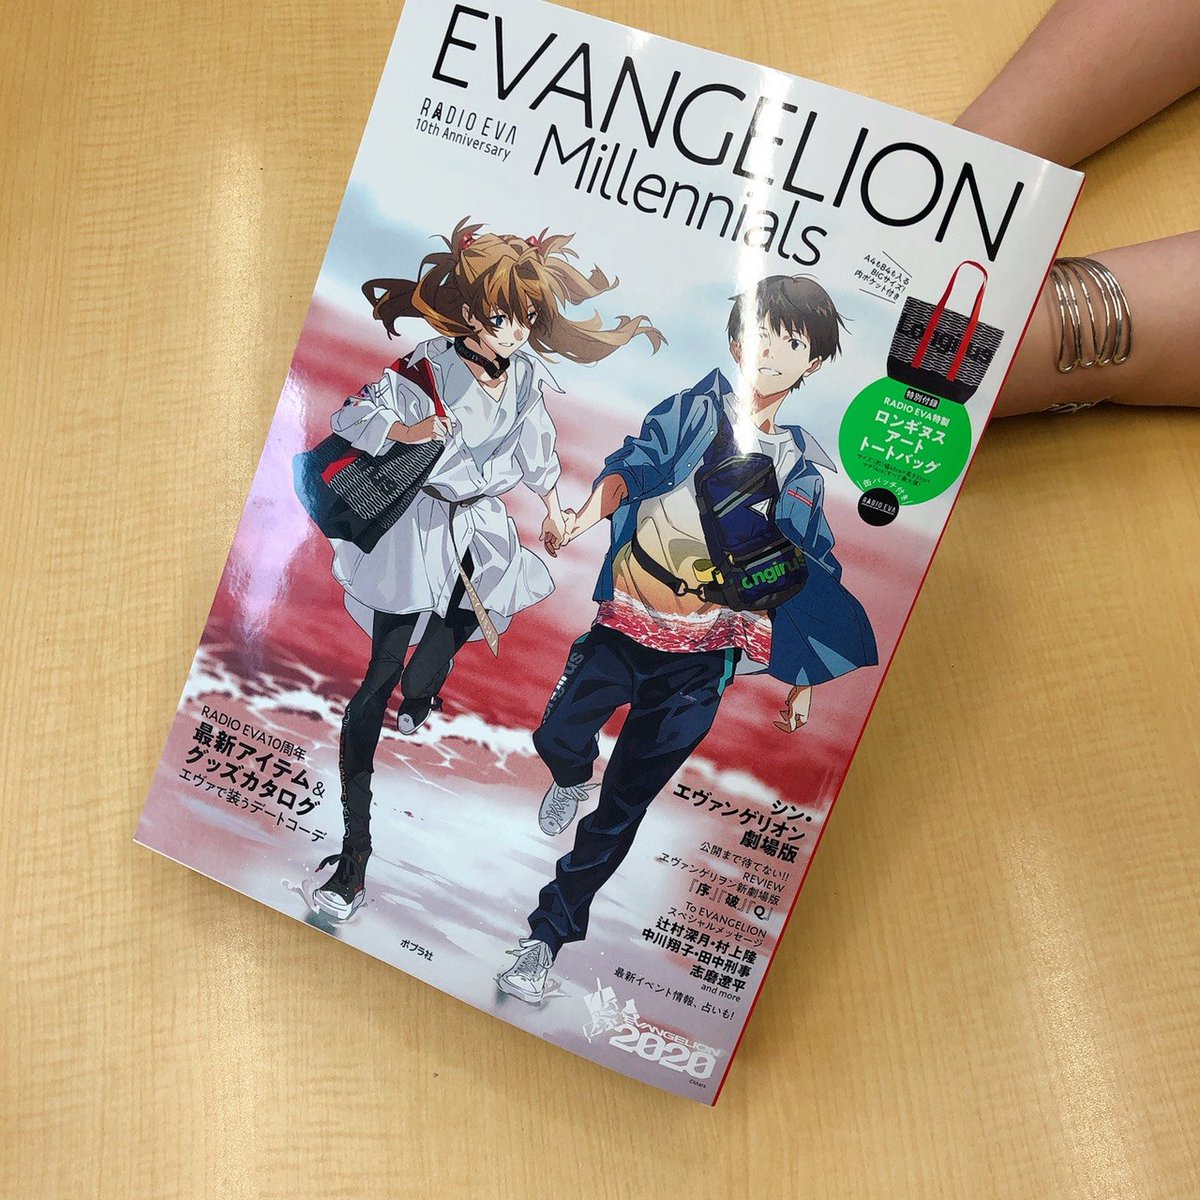 エヴァインフォ公式 豪華付録つきradio Evaのファッションブック Evangelion Millennials Radio Eva 10th Anniversary が間もなく発売 掲載されている米山舞さんの描き下ろしもチラリ 7月8日ごろから書店さんにも並びだすとのこと ご予約推奨です